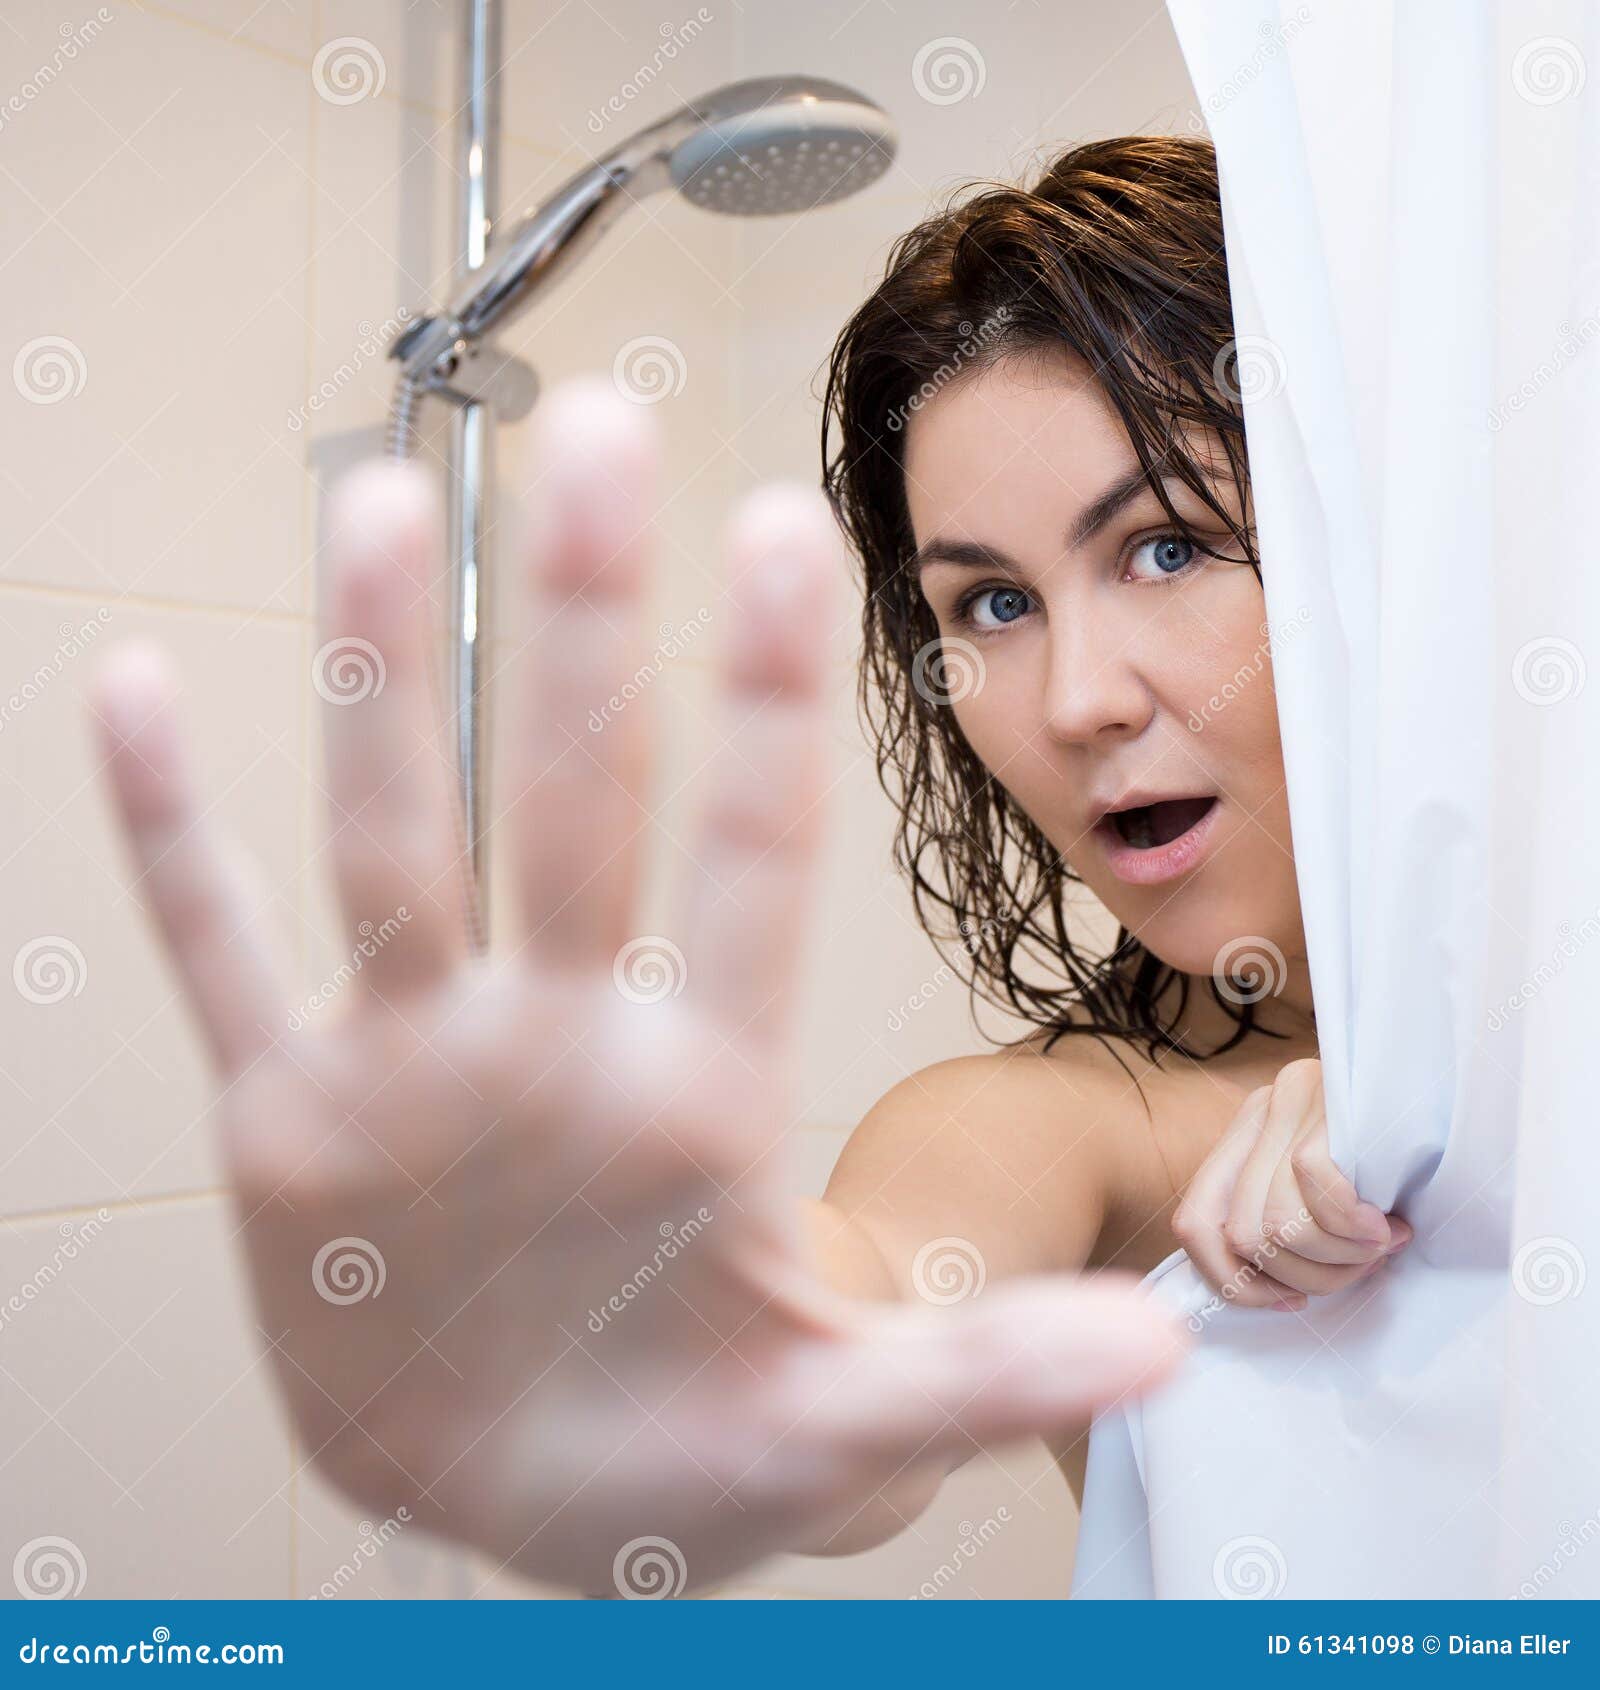 Мама дай в душе. Девушка в ванной за шторкой. Женщина в душе прикрывается. Взрослые женщины в душе. Девушка в душе за шторкой.